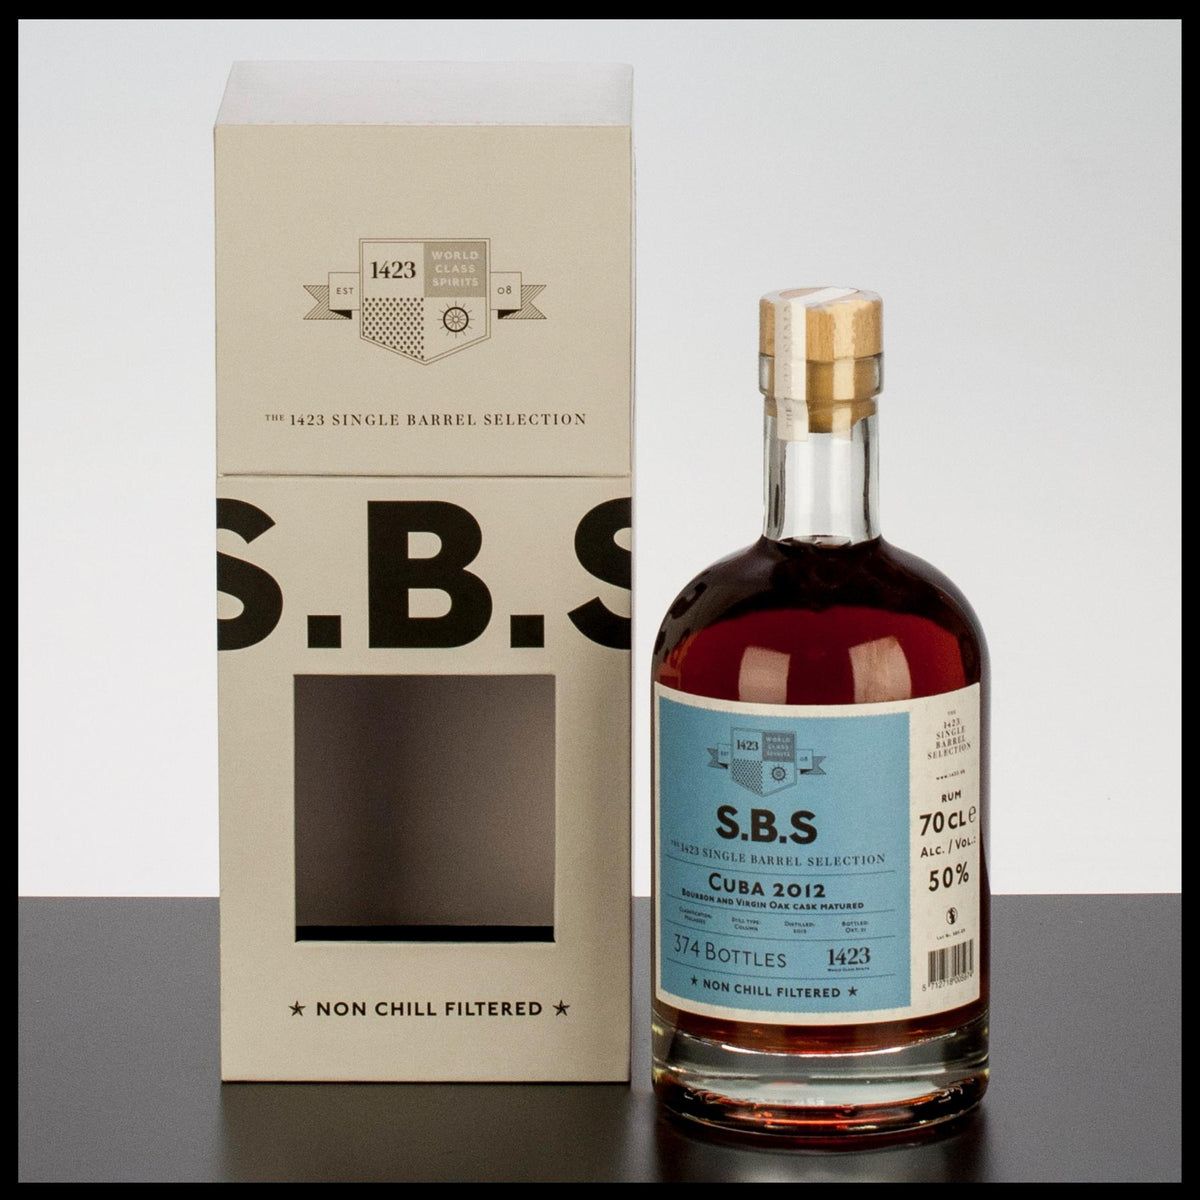 SBS Cuba 2012 Rum 0,7L - 50% Vol. - Trinklusiv